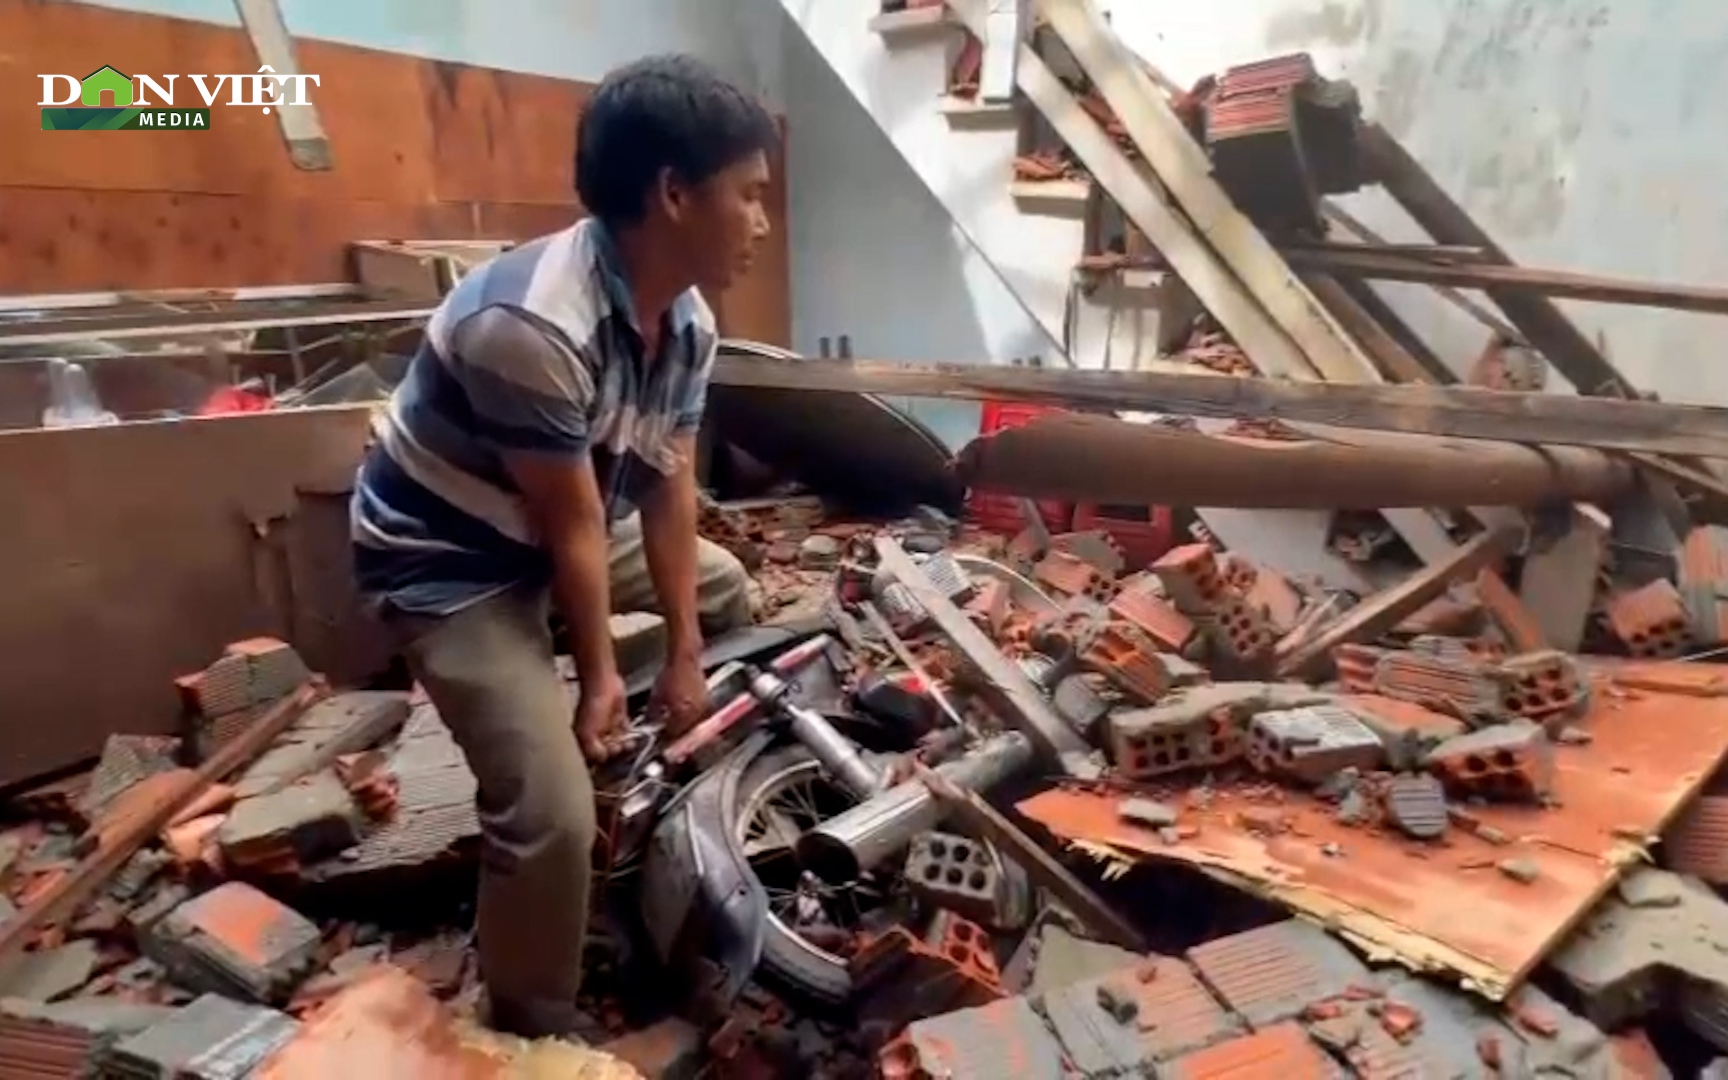 Quảng Ngãi: Đôi vợ chồng may mắn thoát chết trong ngôi nhà sập khi bão số 4 đổ bộ